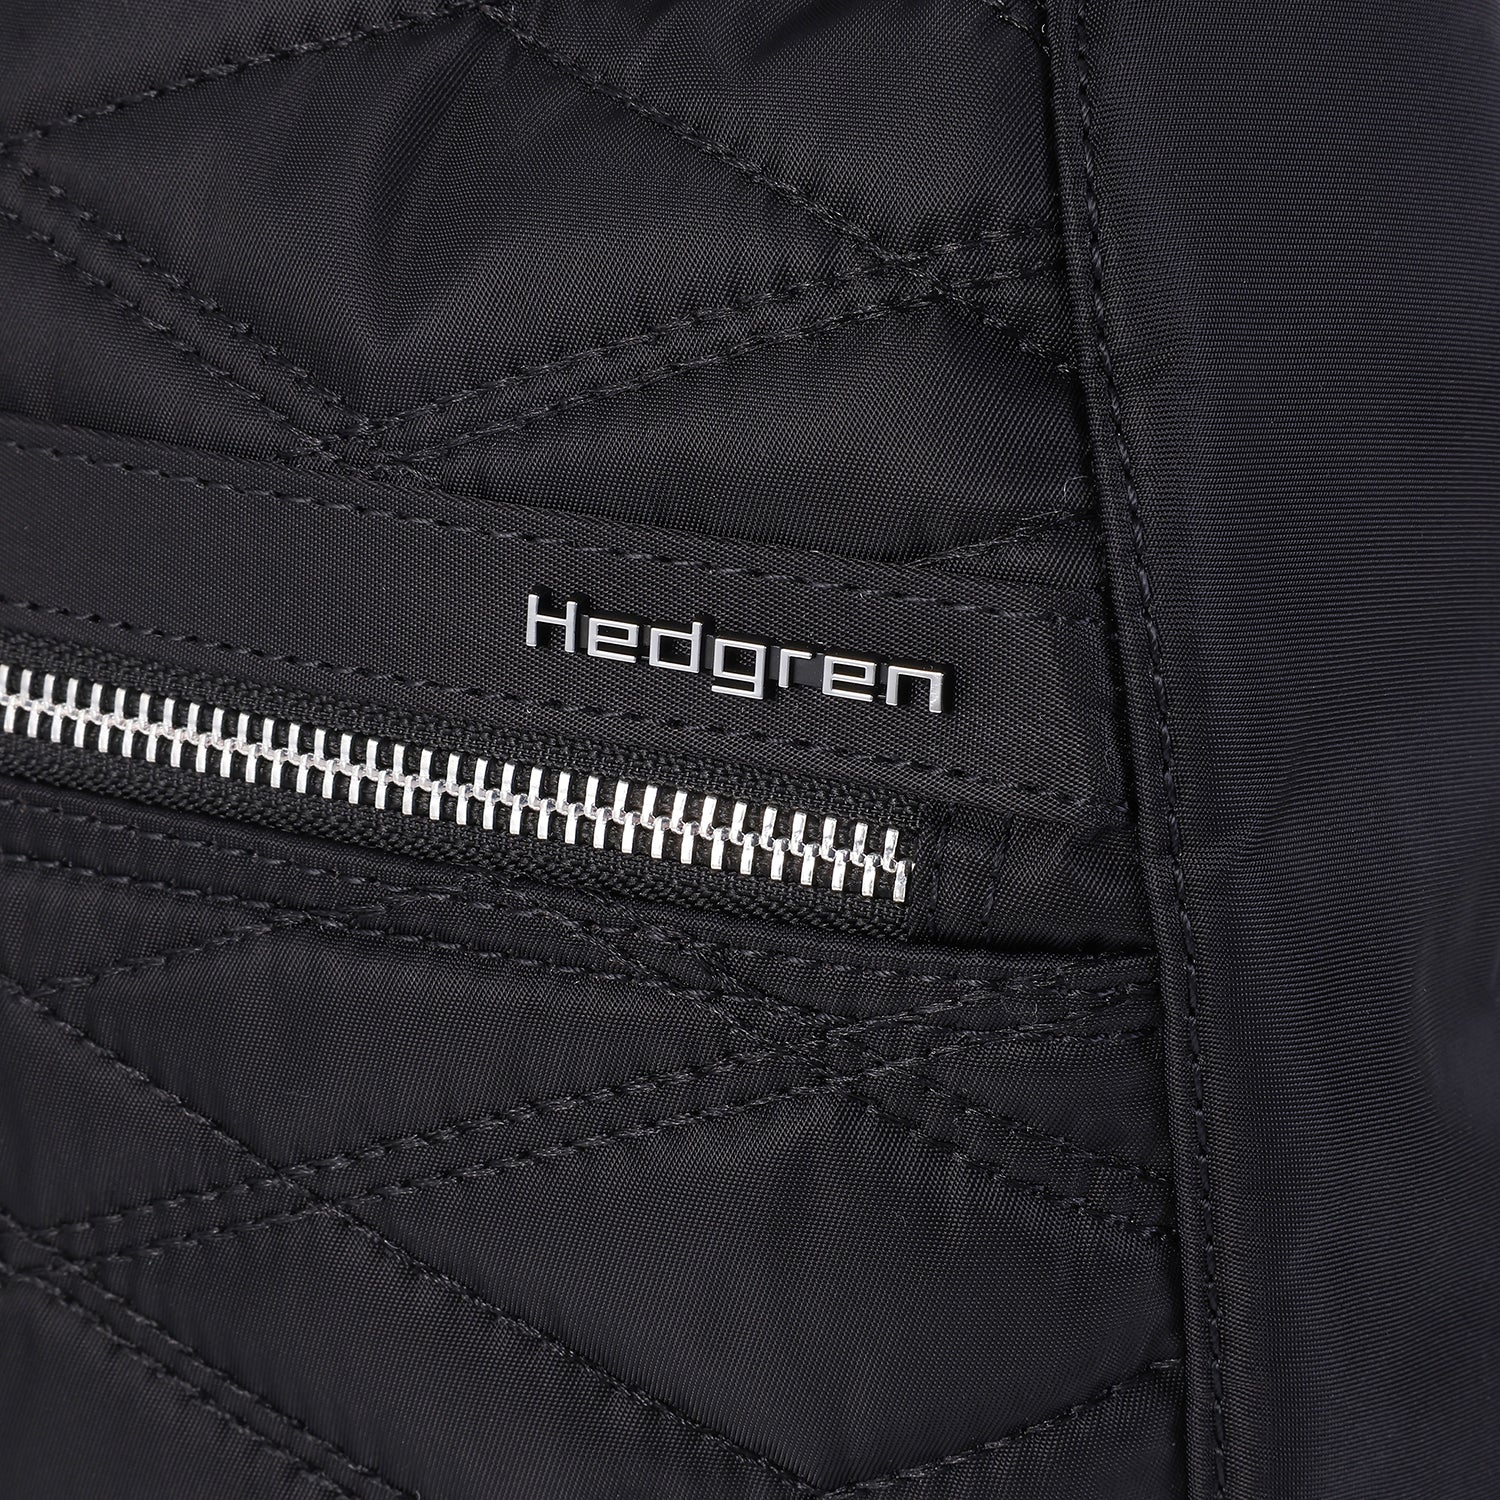 Hedgren Vogue Large Newquiltfullblack Bag